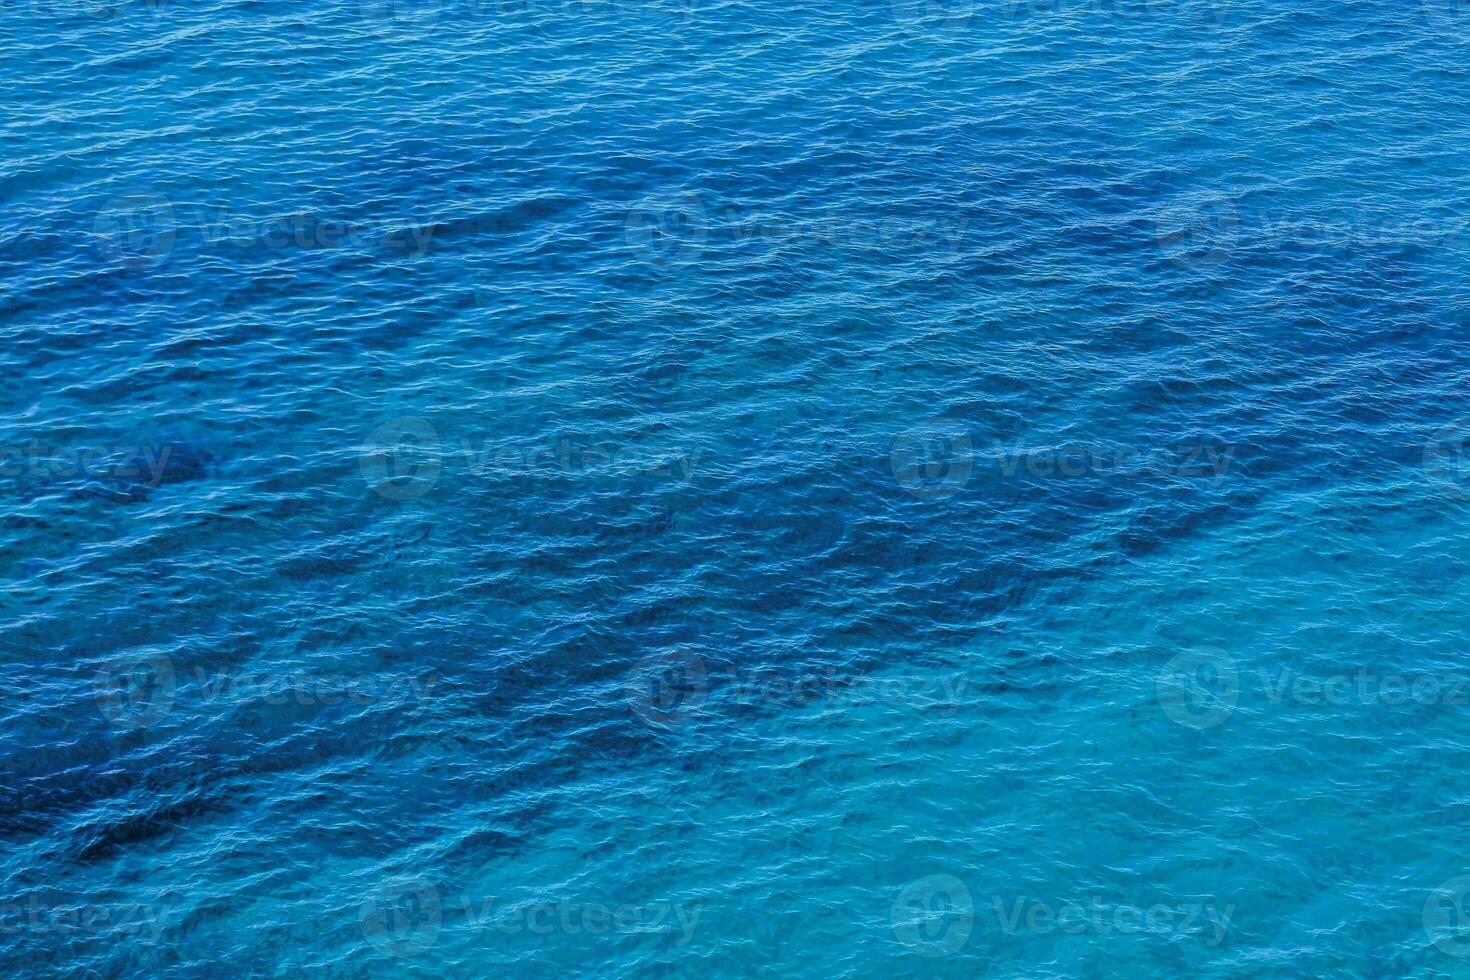 de hav är blå och har en massa av vatten foto